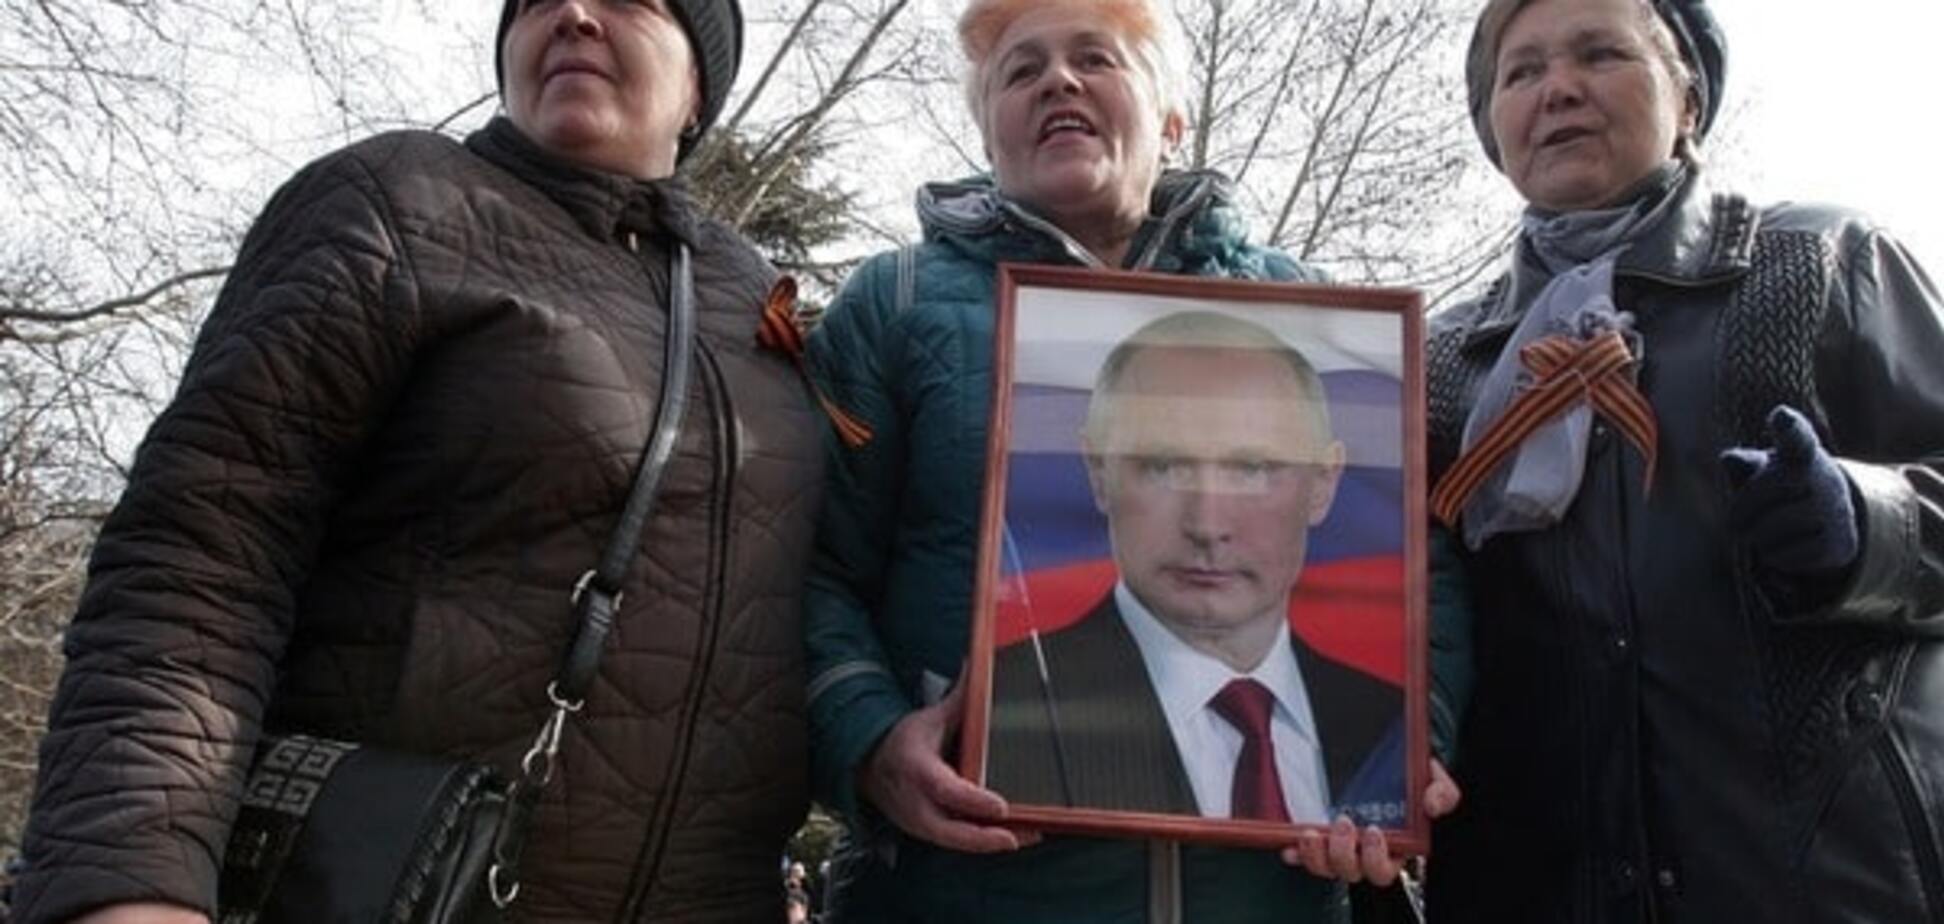 Кількість симпатиків Путіна в Україні зменшилася в п'ять разів - опитування